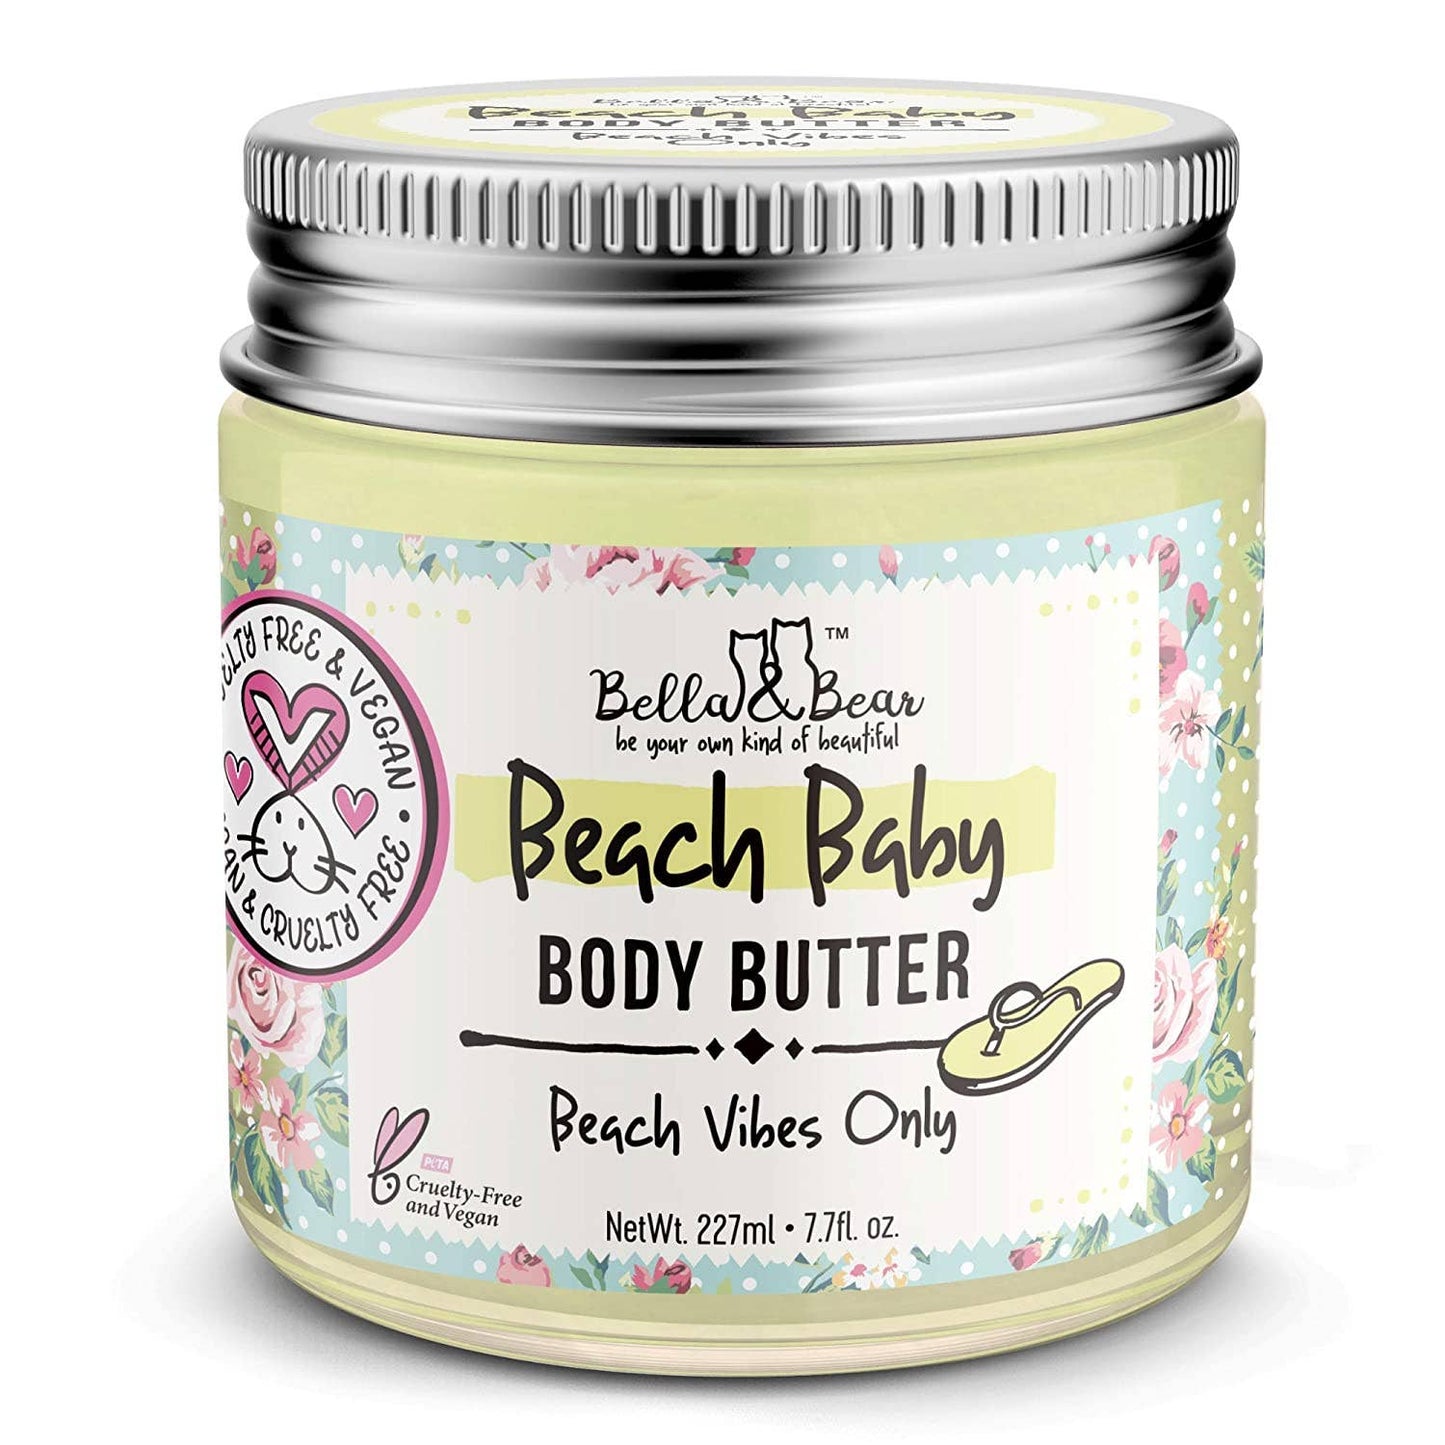 Beach Baby Body Butter 6.7oz